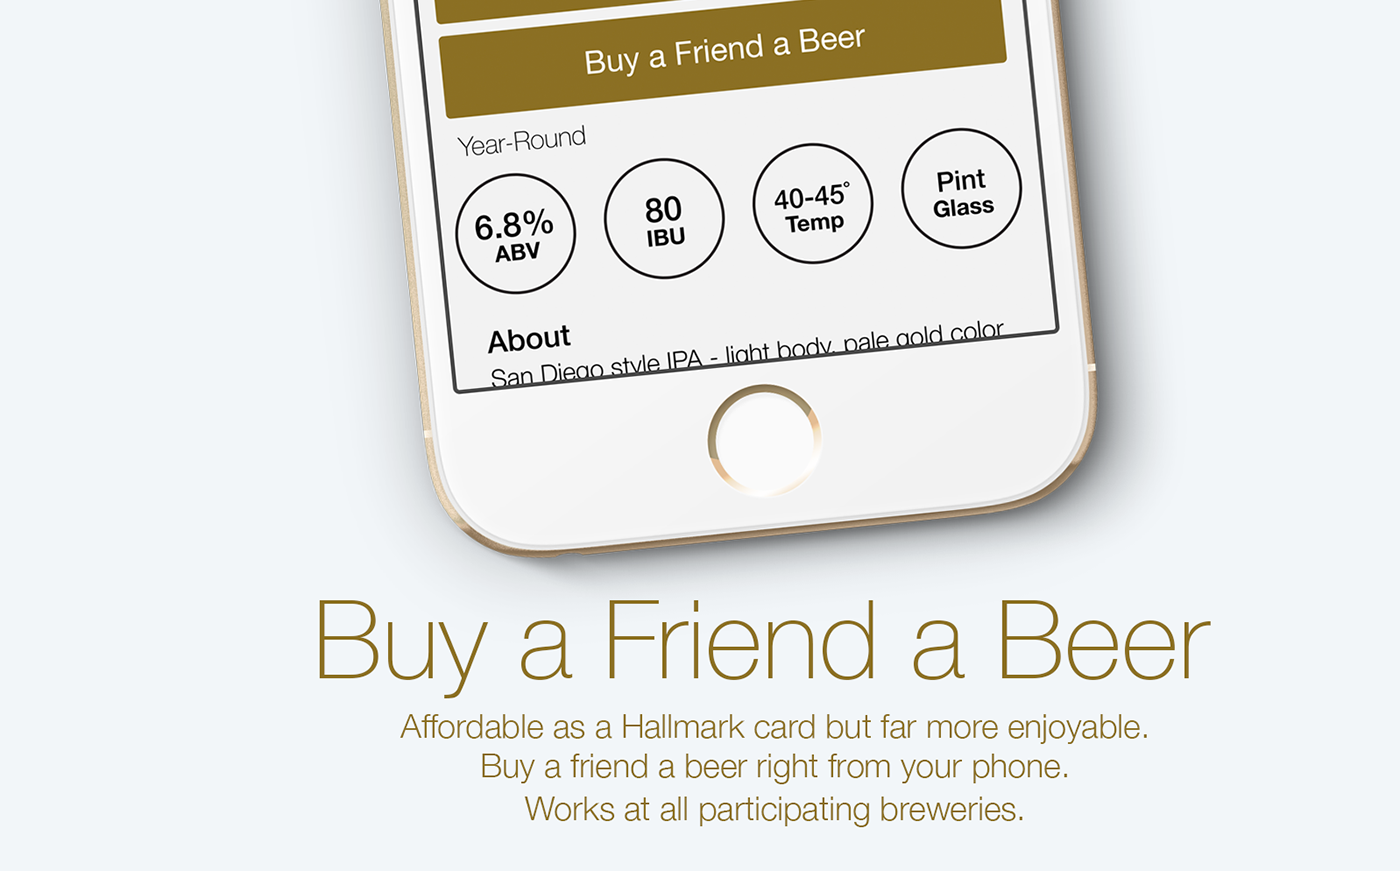 beer craft beer apps Beer Apps